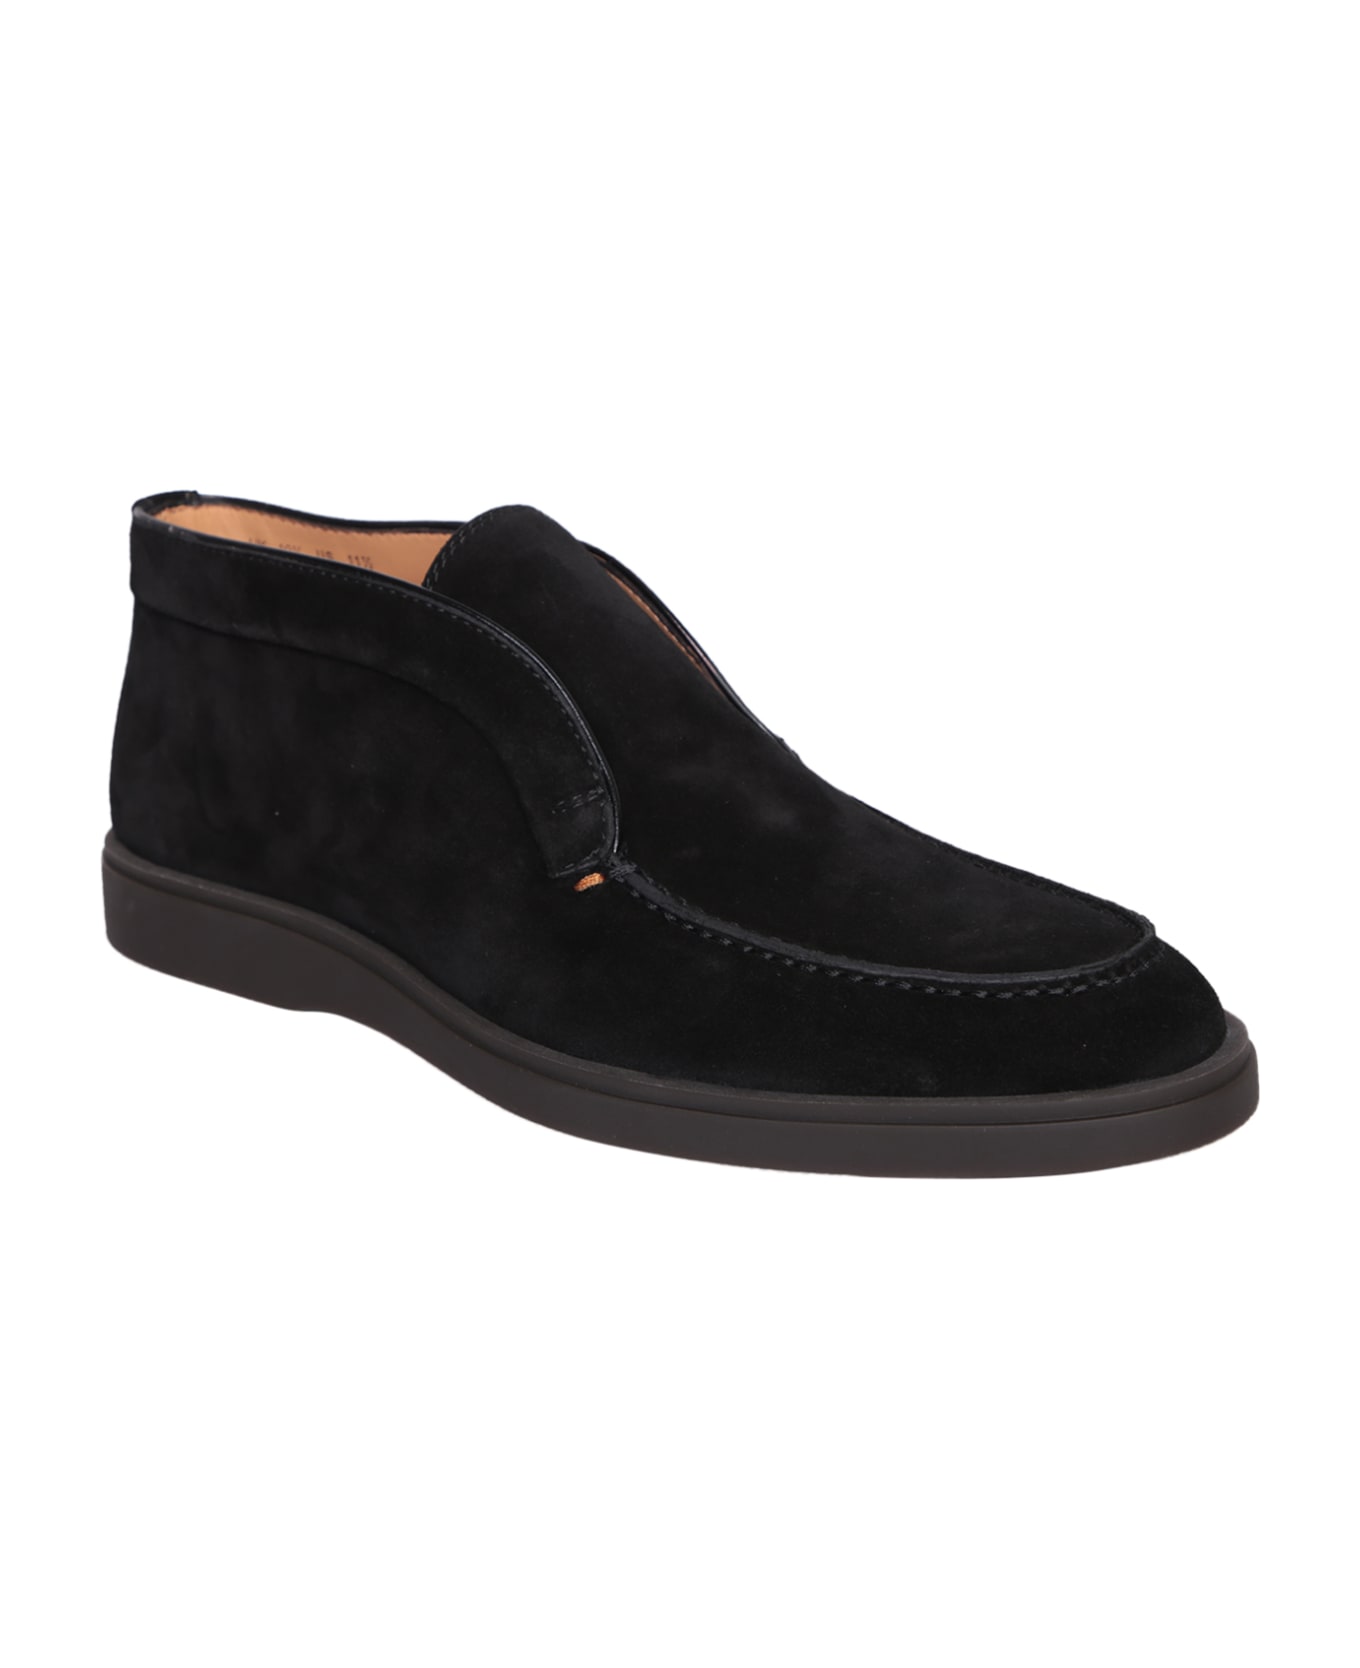 Santoni Suede Black Ankle Boots - Black